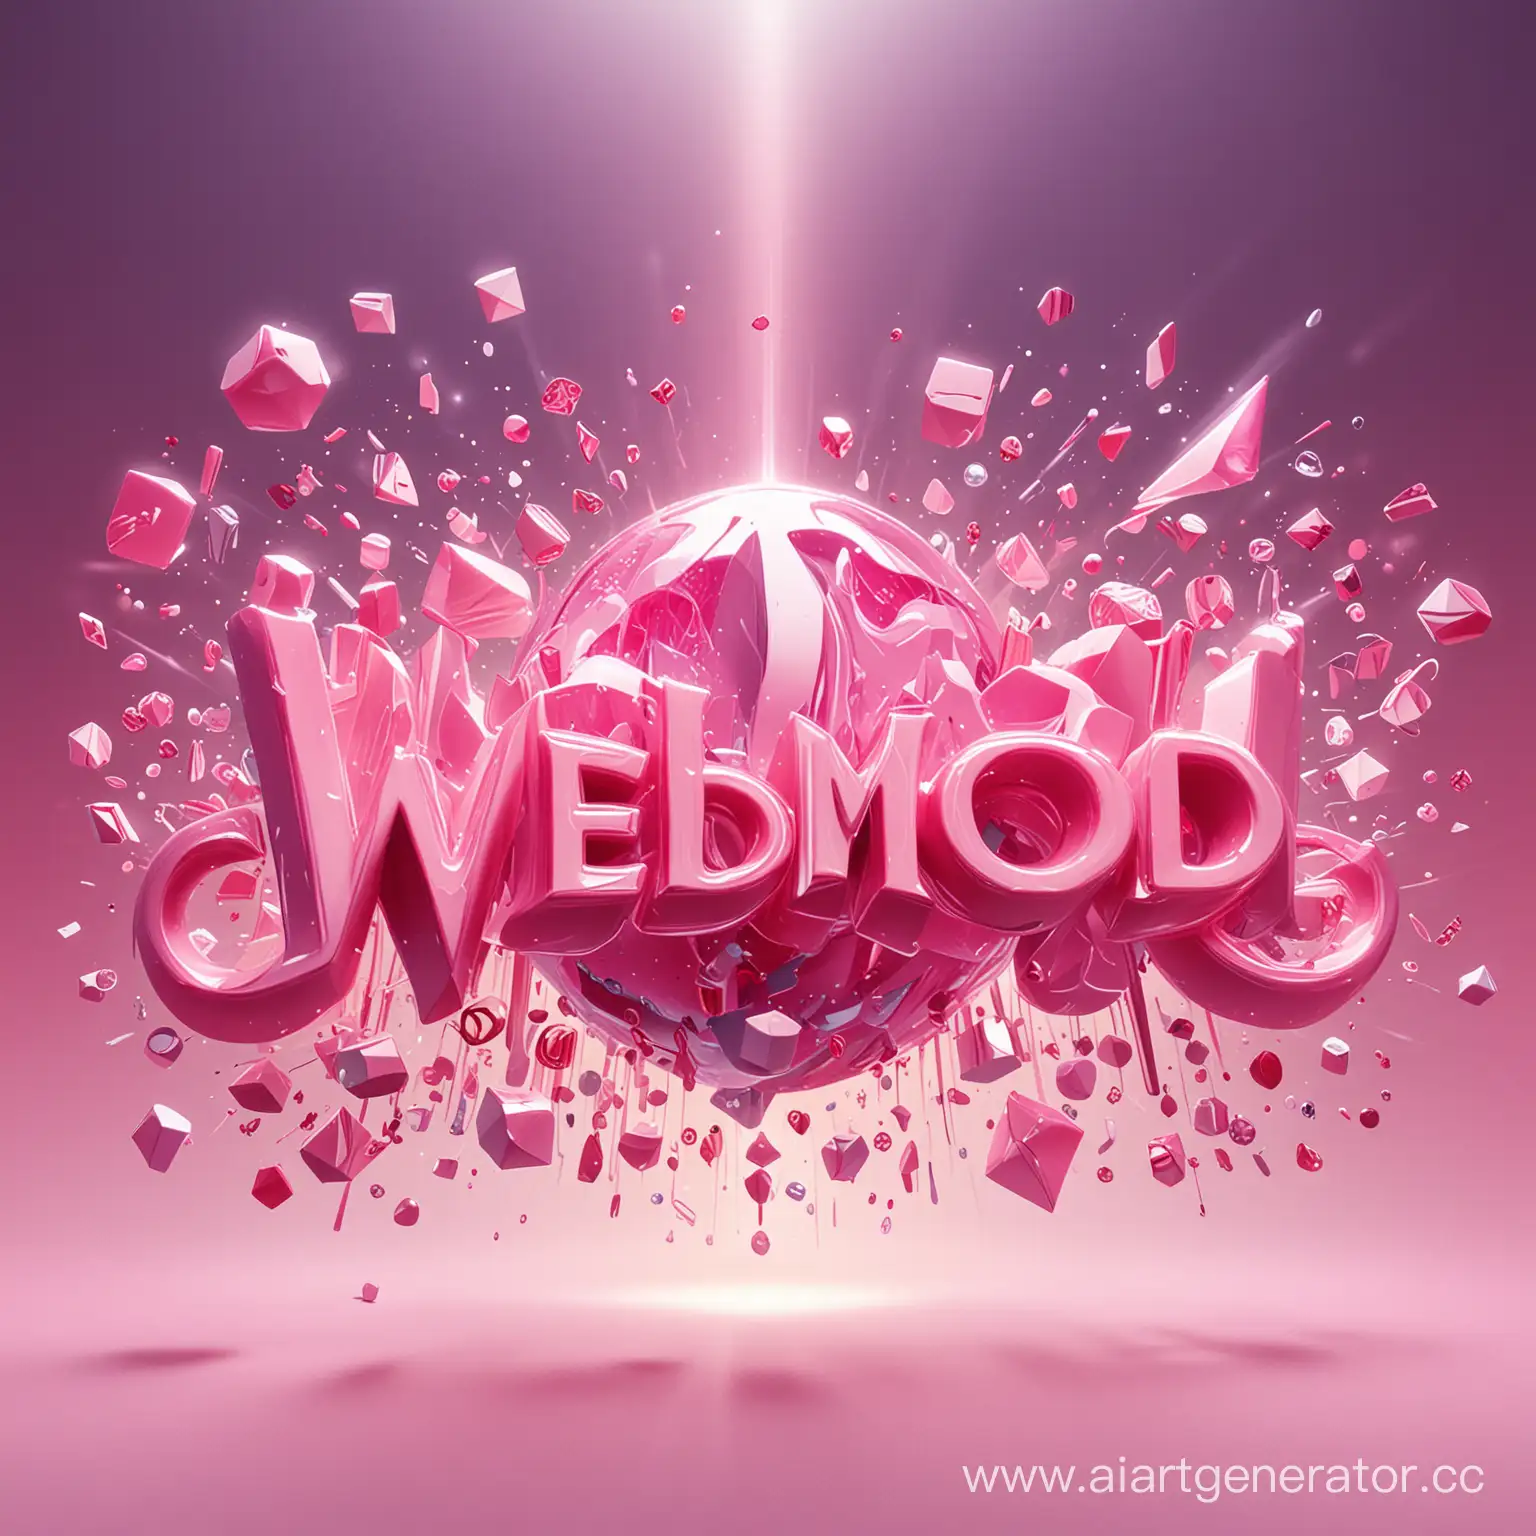 Логотип в центре которого розовыми буквами написано WEBMOOD, а фон представляет собой абстрактное яркое изображение включающую в себя элементы стриминга, совмещенные с модными аксессуарами или женскими элементами